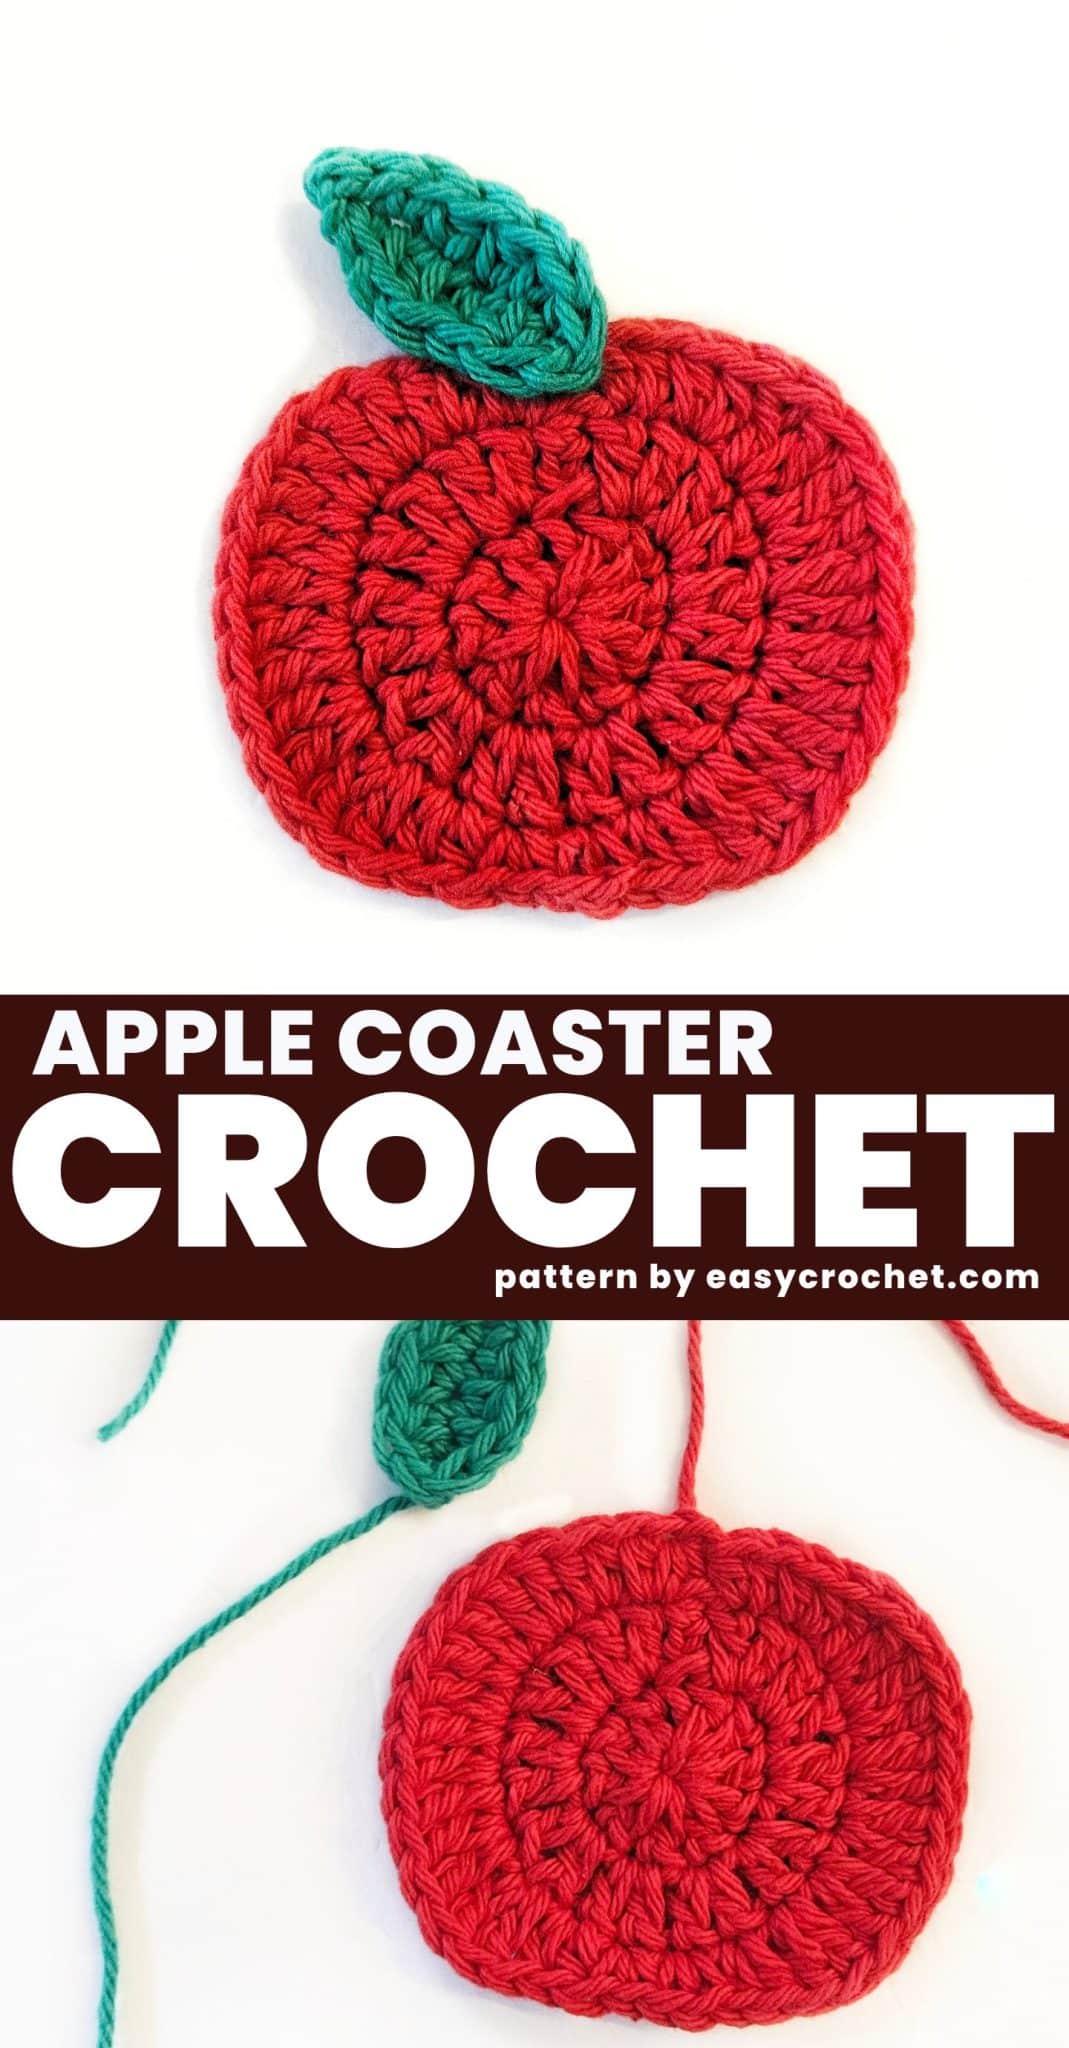 Apple Crochet Coaster pattern